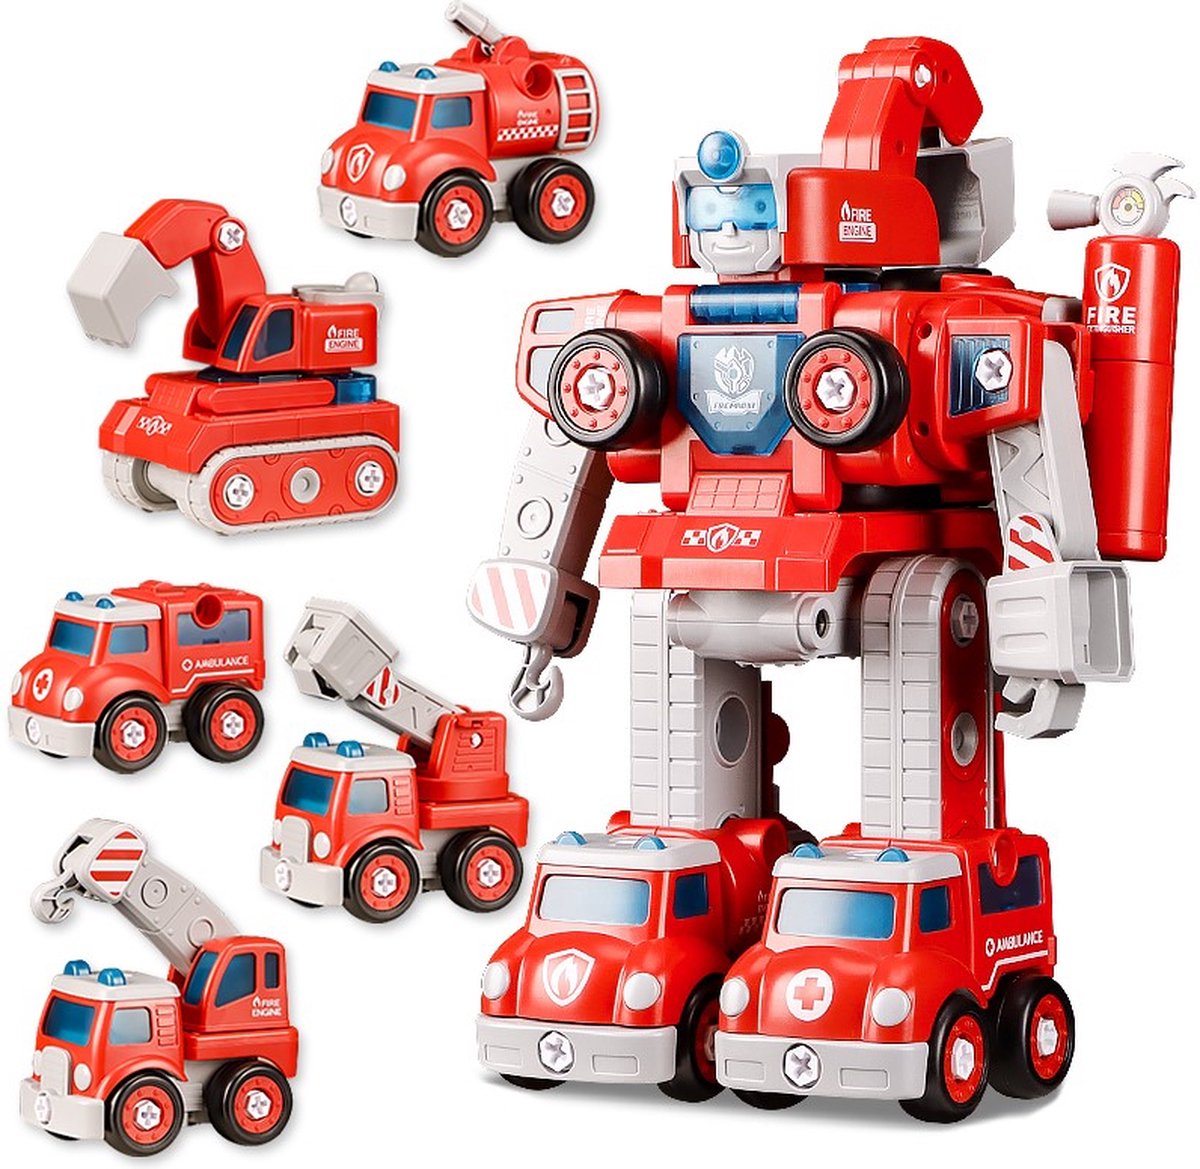 Toys for Boyz - Speelgoed - Brandweerauto Robot - 5 in 1 Bouwpakket - Educatief speelgoed versterkt ouder en kind band - vanaf 3 jaar - Gemaakt van hoogwaardig, veilig en onschadelijk ABS-kunststof